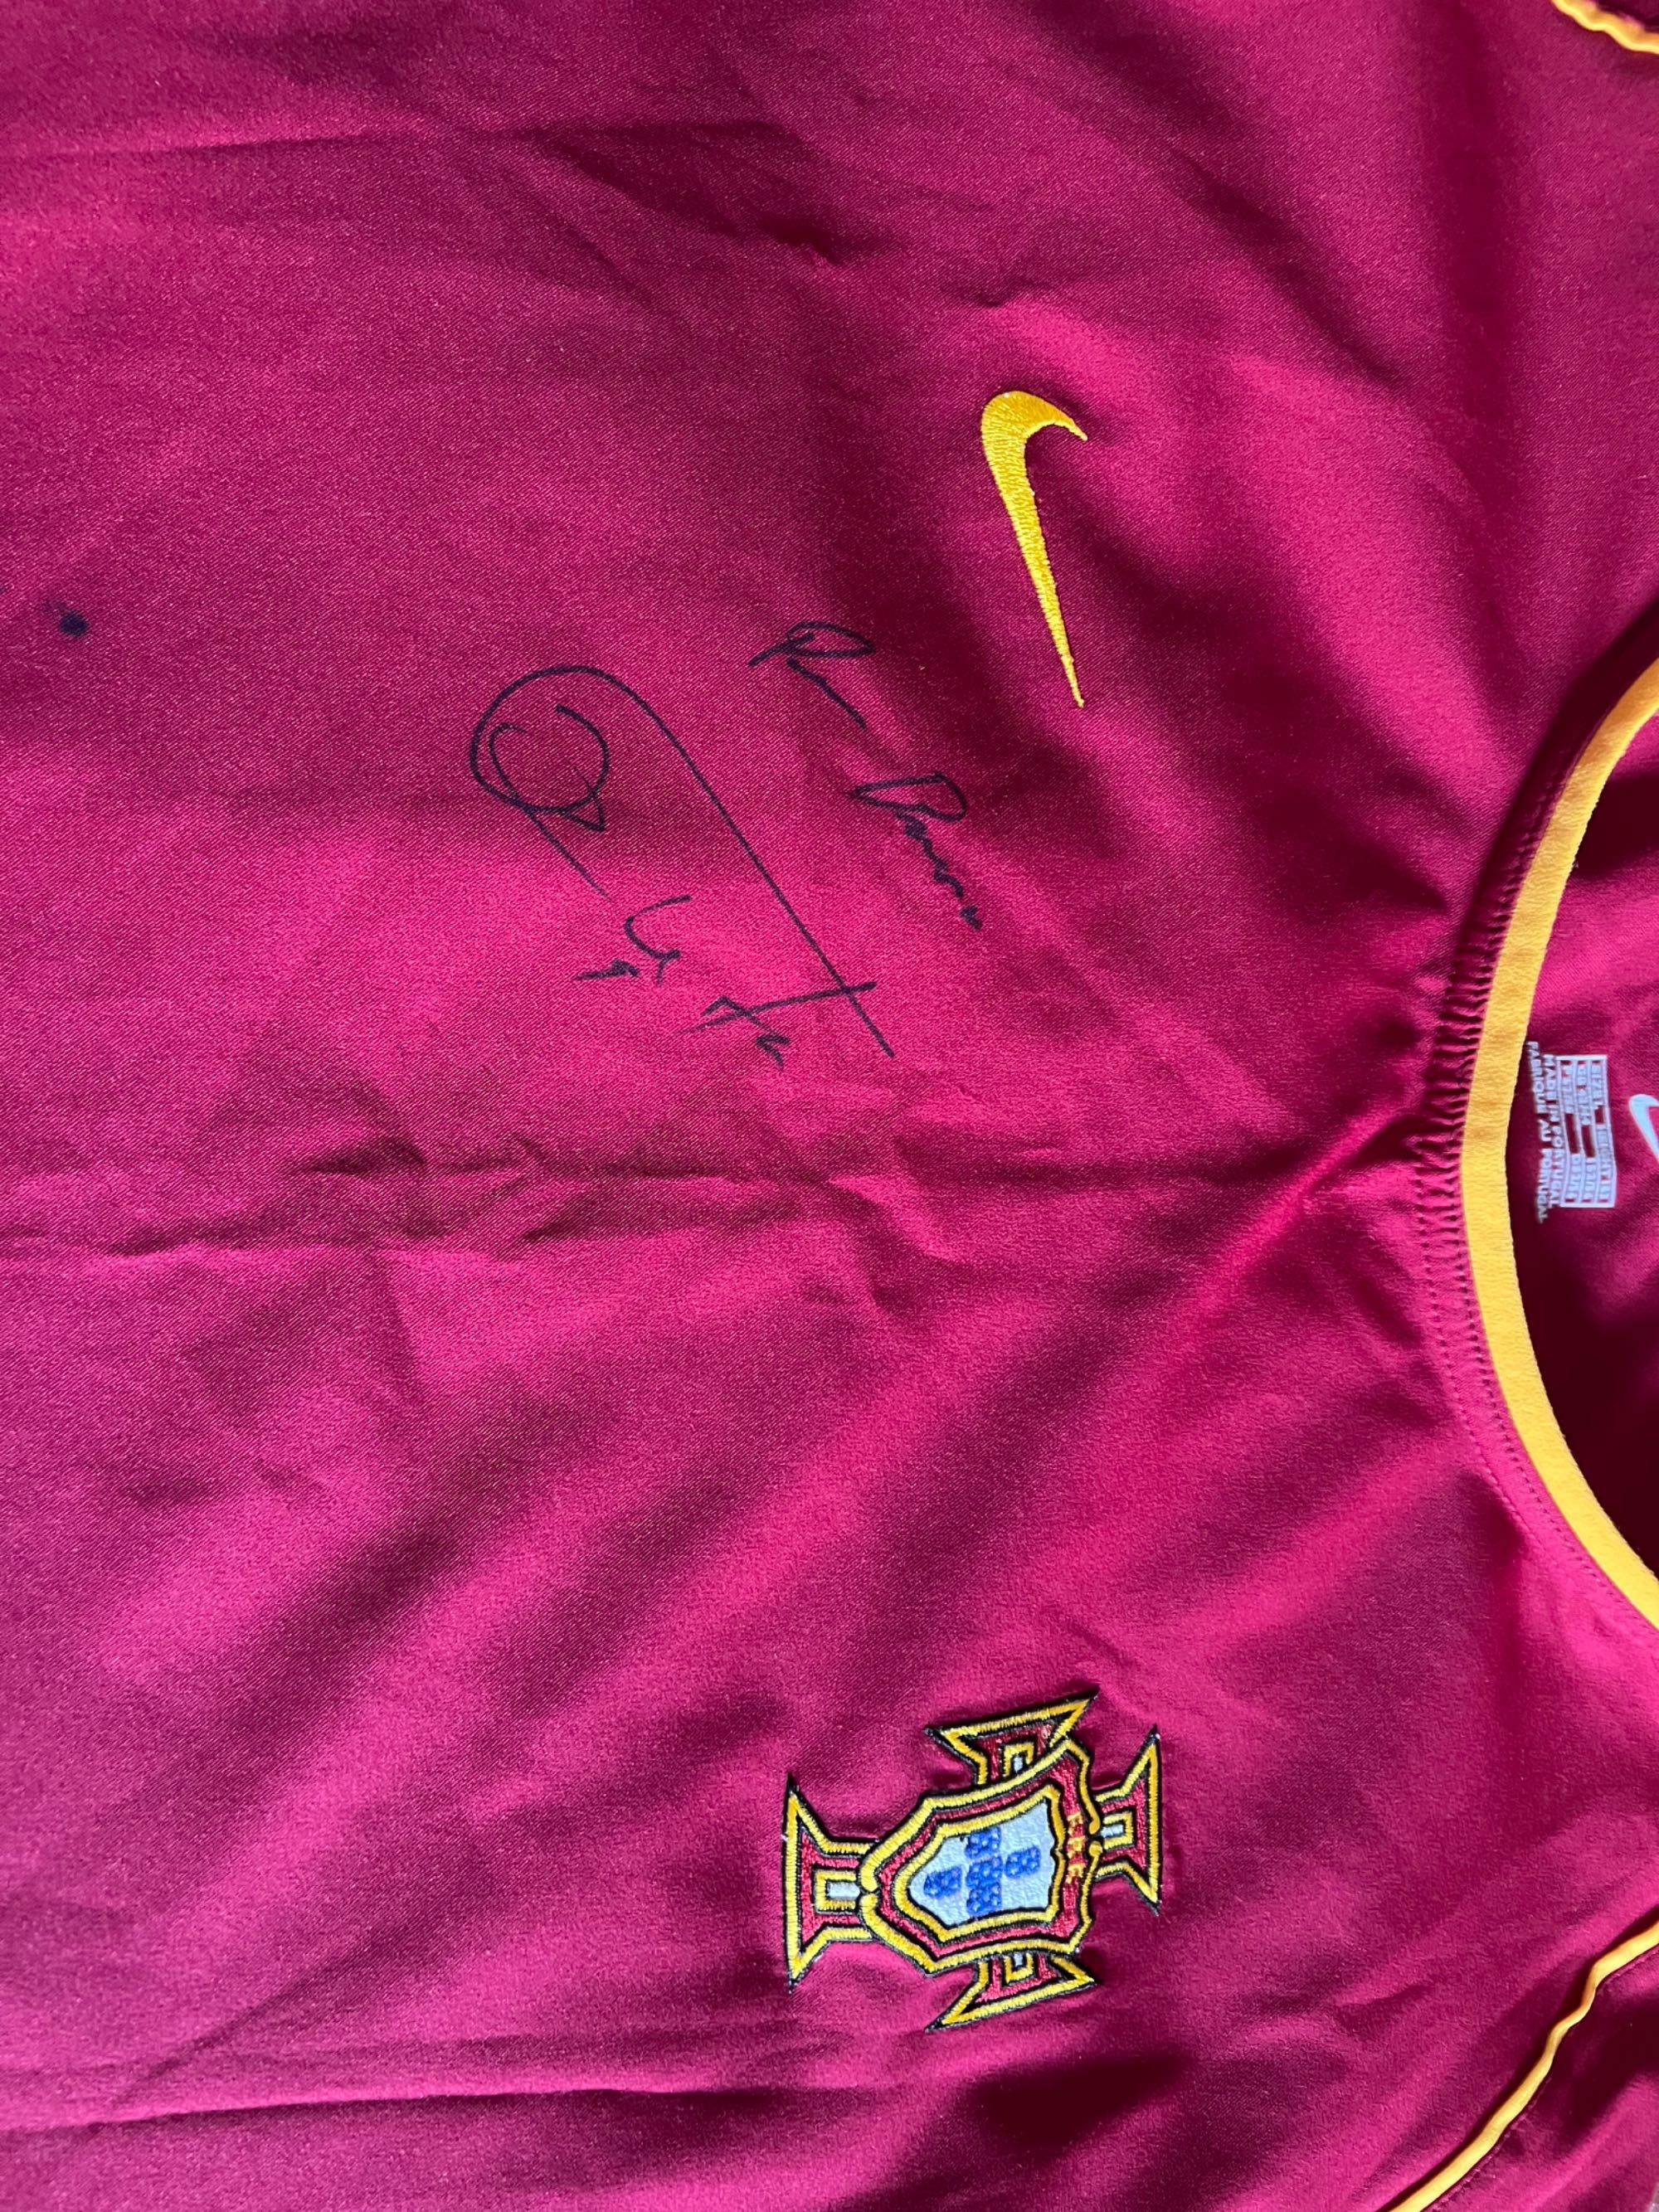 Pauleta camisola da selecao assinada autografada portugal